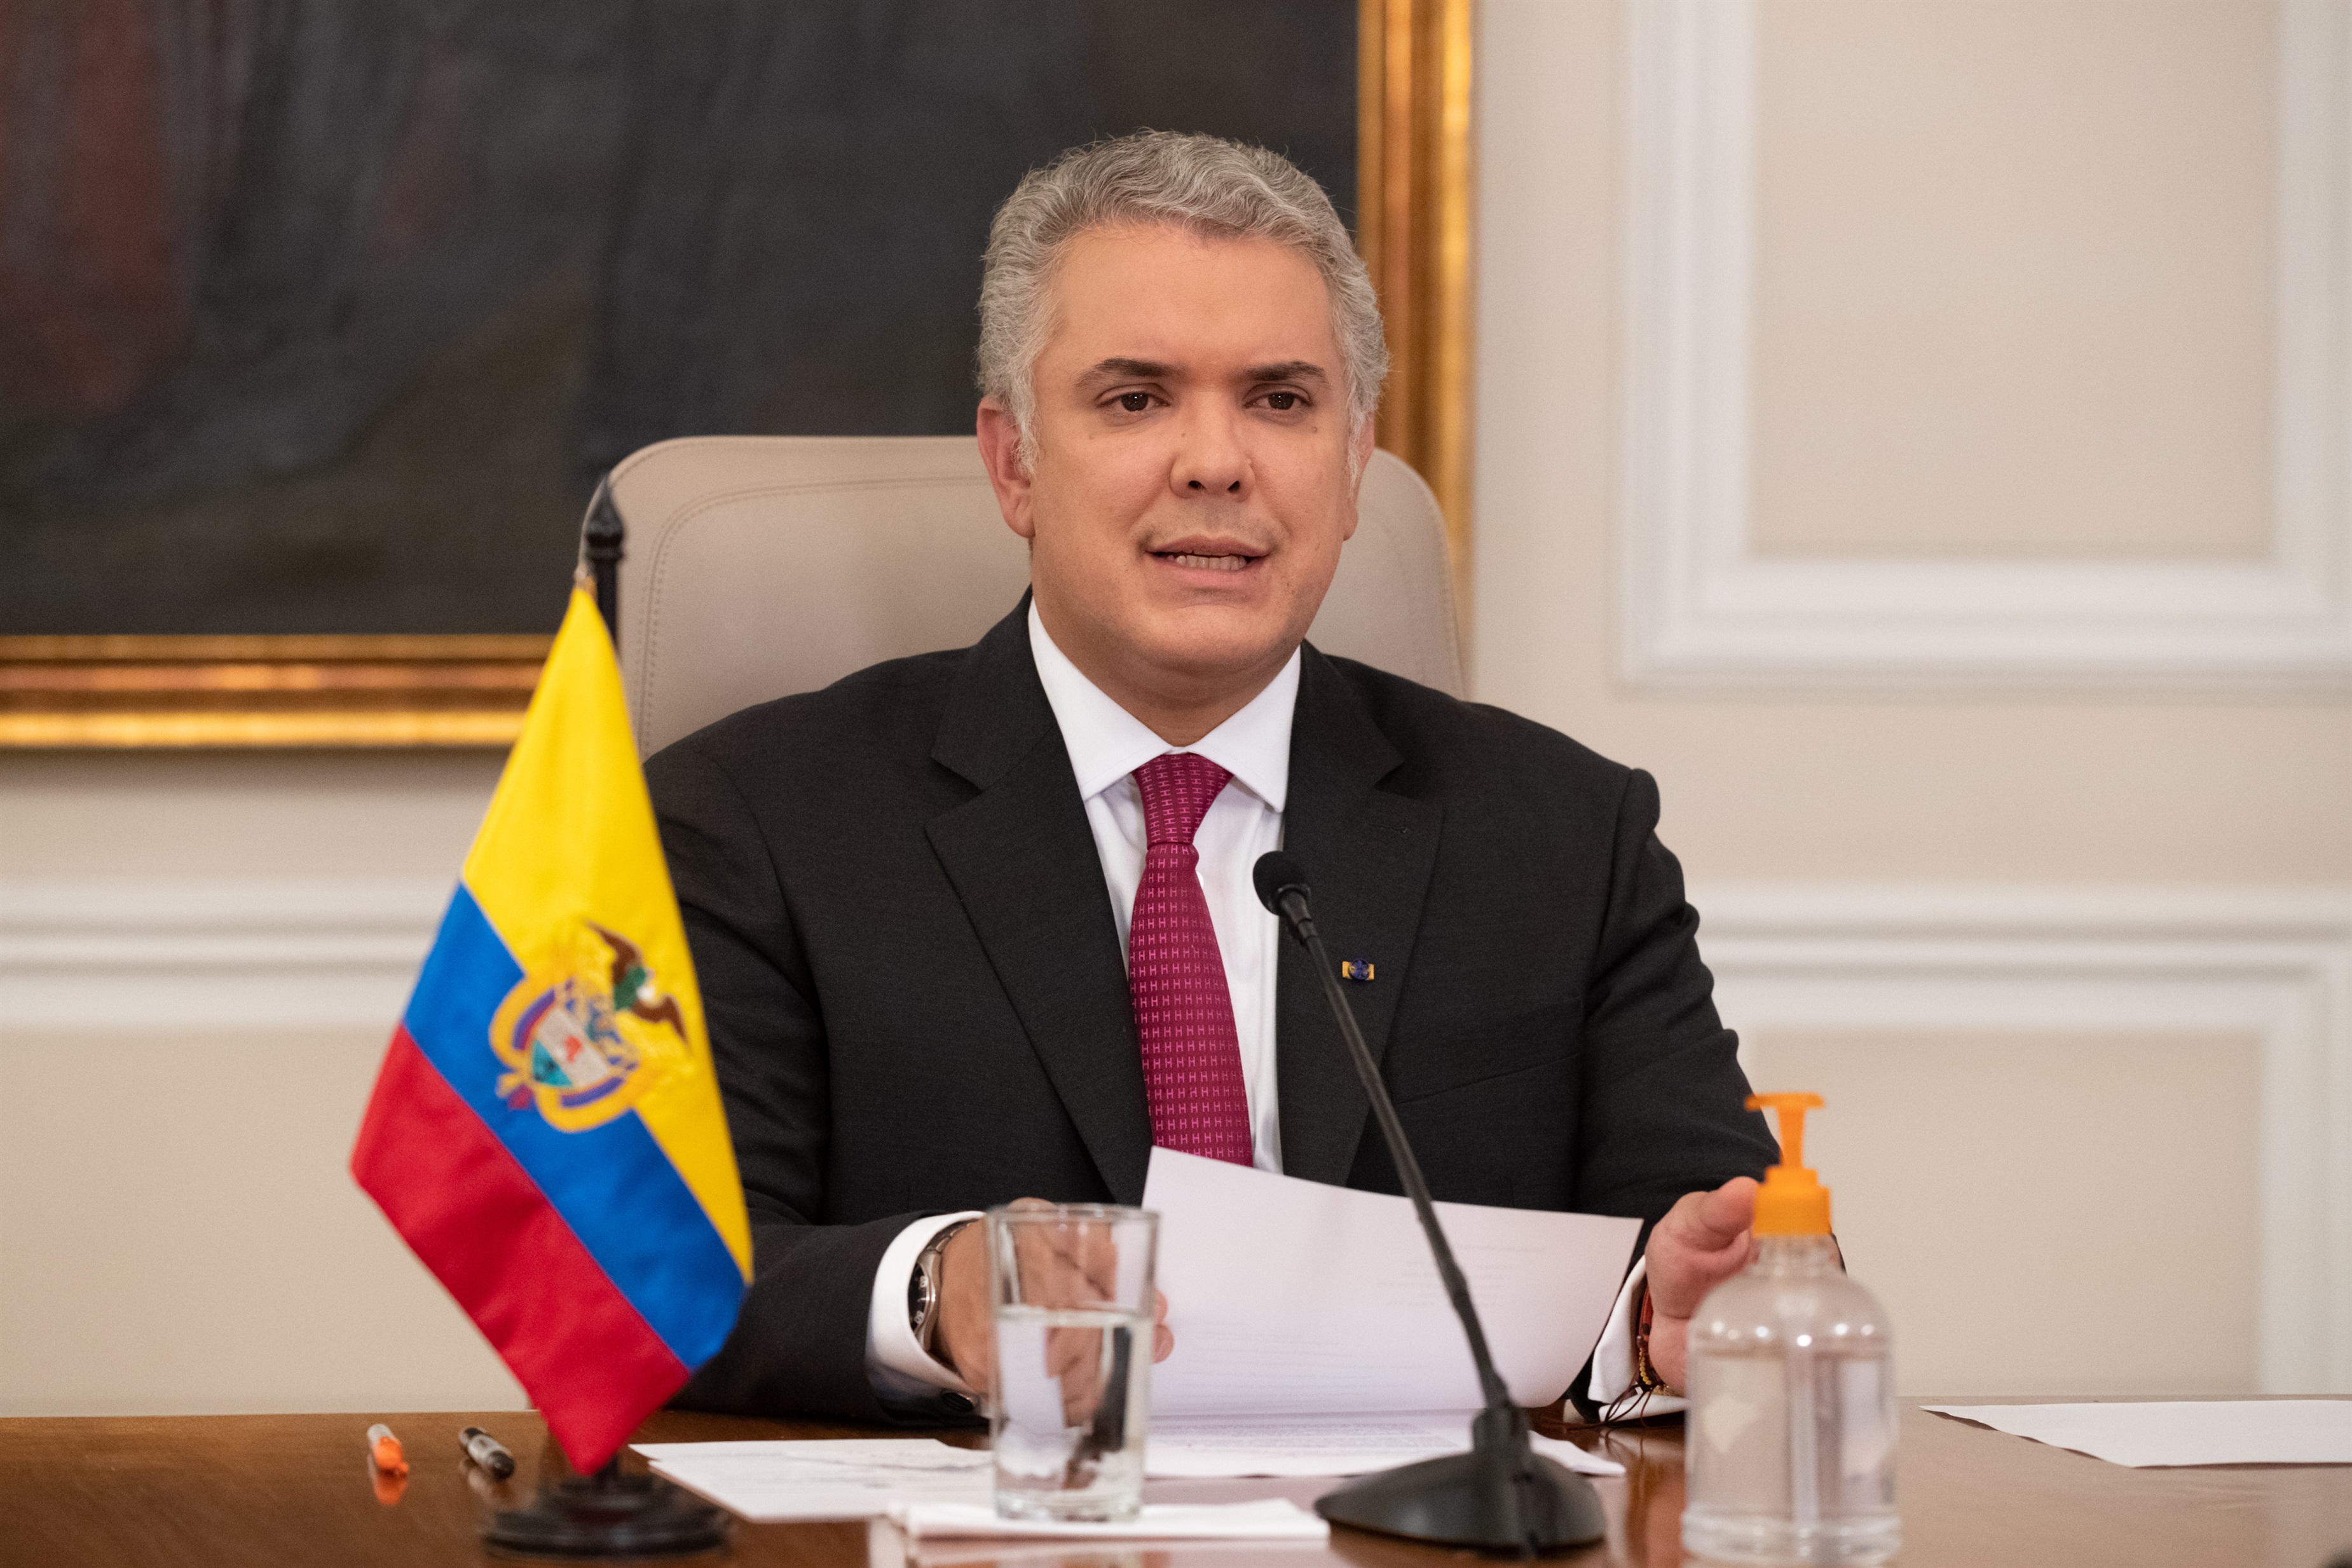 12/03/2021 El presidente de Colombia, Iván Duque
POLITICA SUDAMÉRICA COLOMBIA
EFRAIN HERRERA / PRESIDENCIA COLOMBIA
